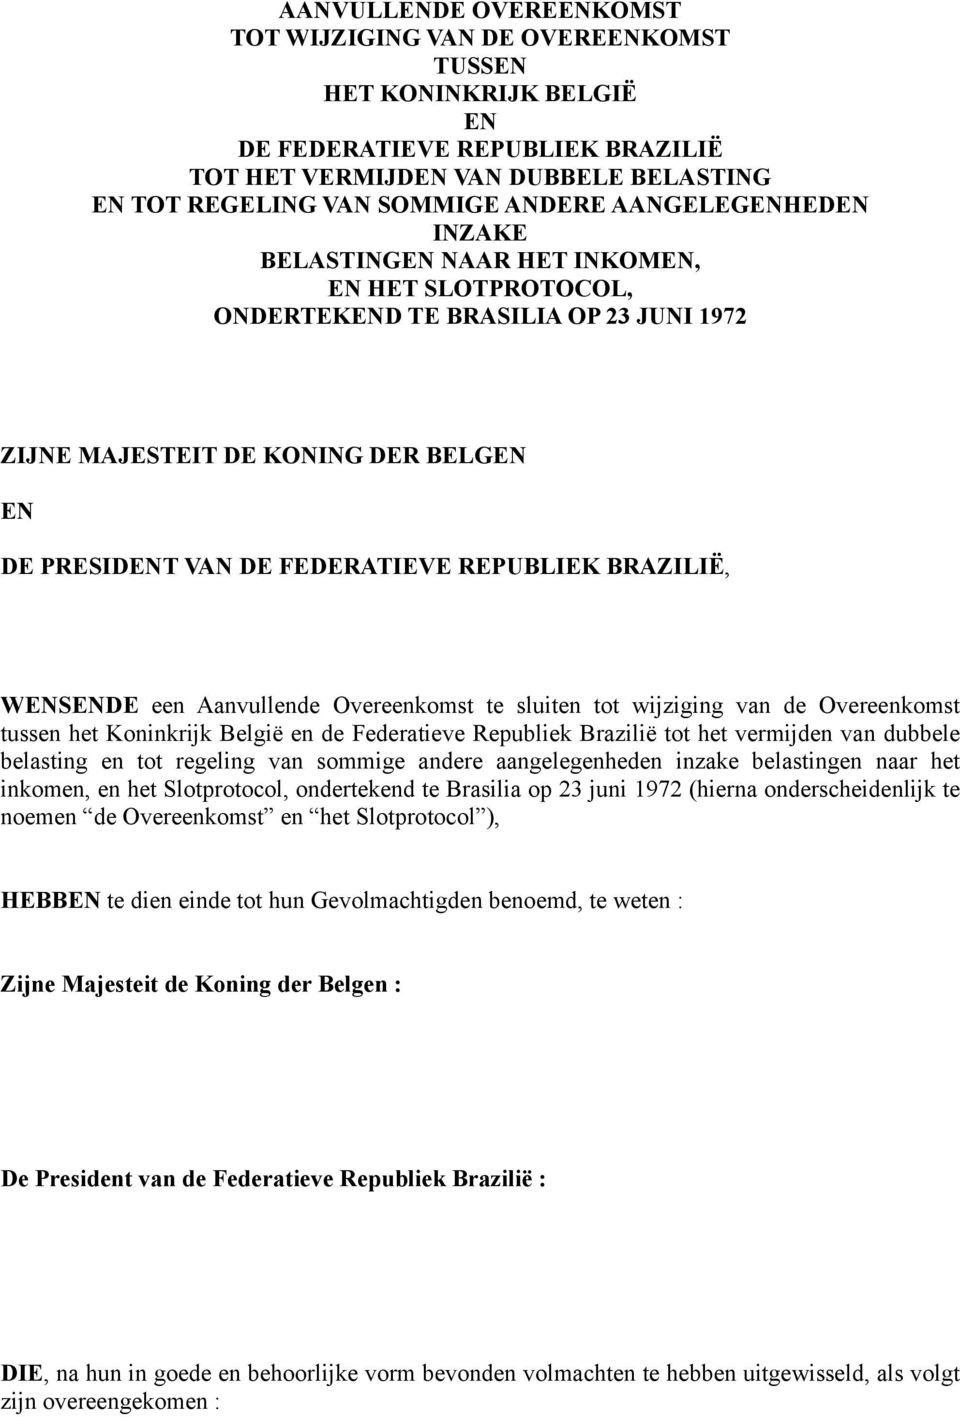 BRAZILIË, WENSENDE een Aanvullende Overeenkomst te sluiten tot wijziging van de Overeenkomst tussen het Koninkrijk België en de Federatieve Republiek Brazilië tot het vermijden van dubbele belasting